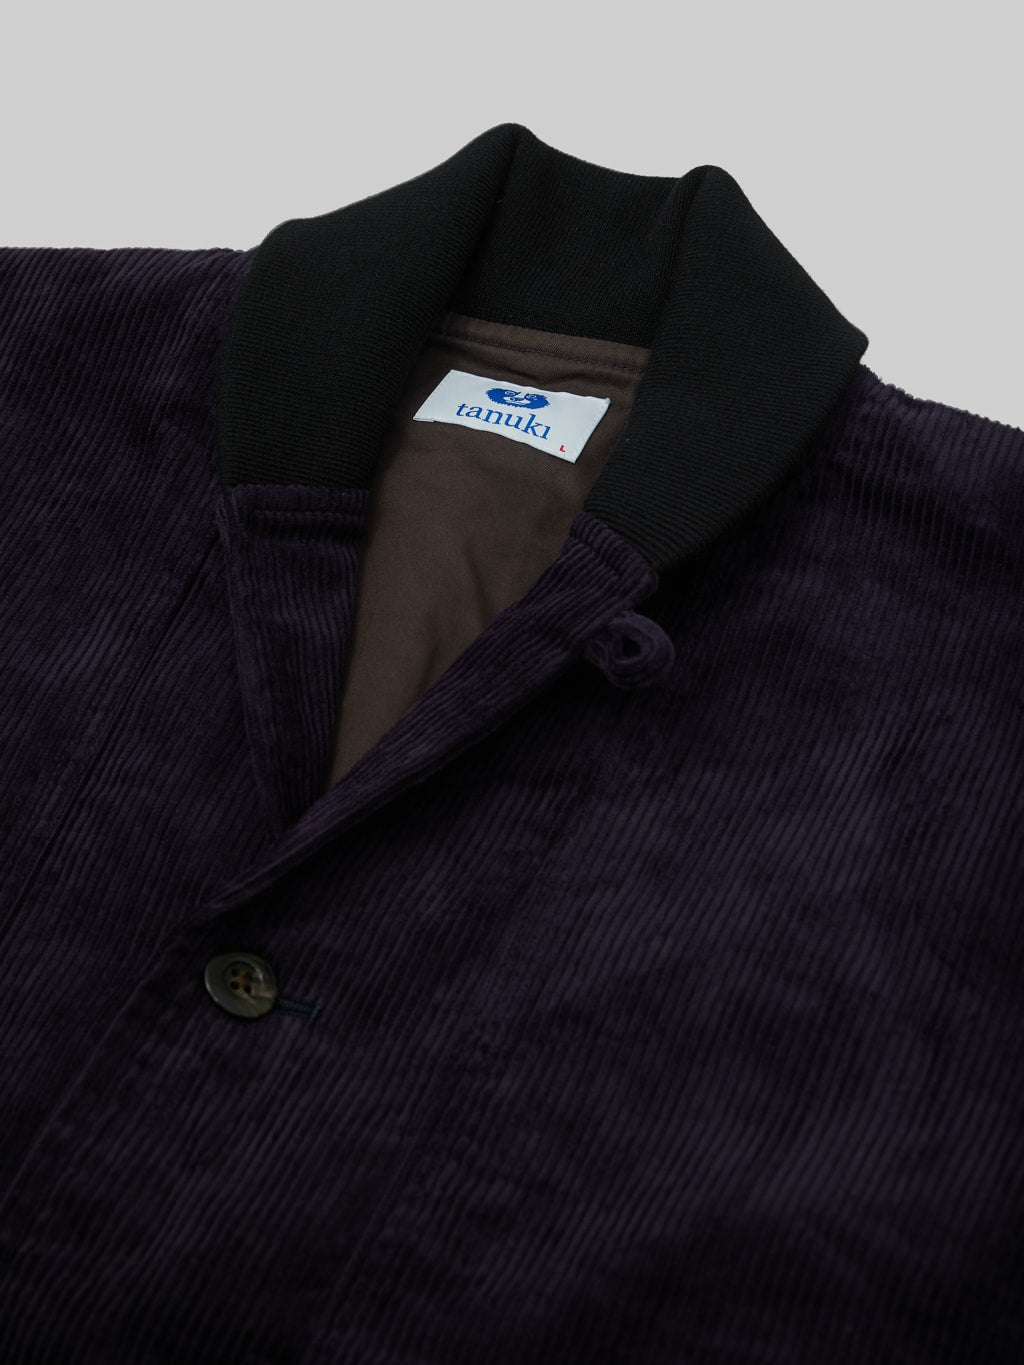 Tanuki Sazanami Corduroy natural indigo dyed Jacket  collar detail